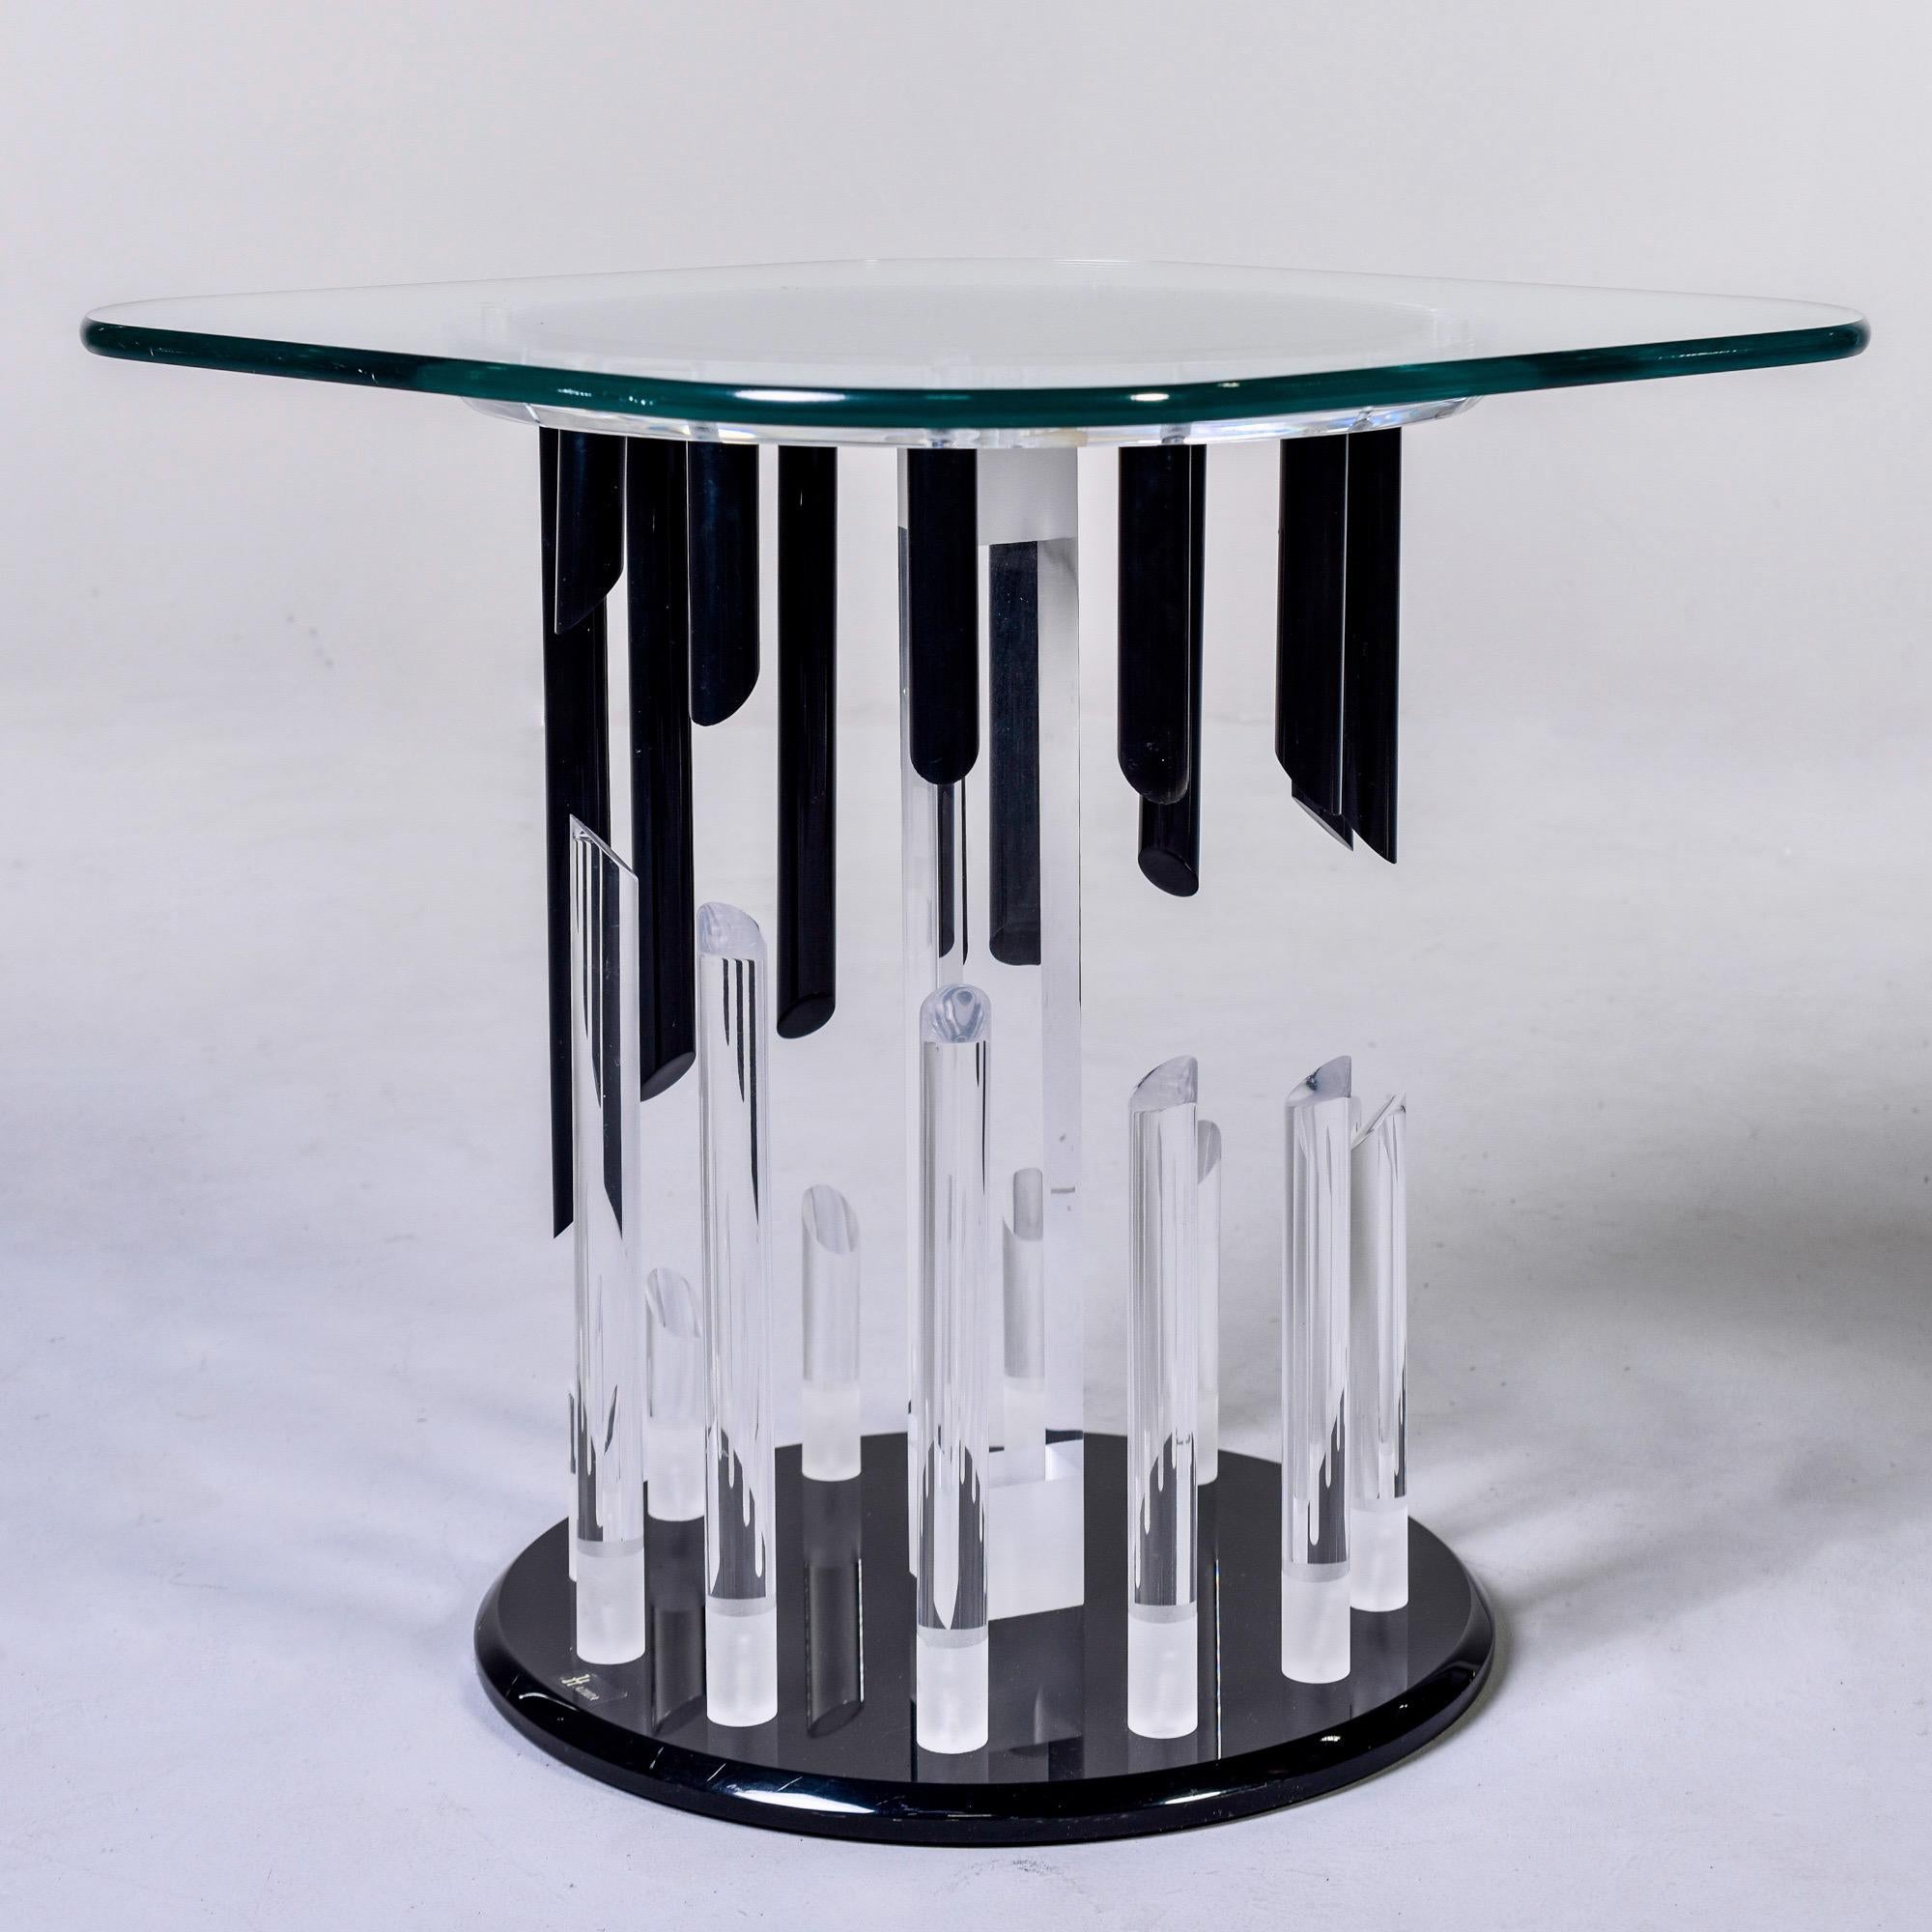 Beistelltisch mit Lucite-Sockel von Haziza, ca. 1980er Jahre. Der Tisch hat einen schwarzen Lucite-Sockel mit klaren und schwarzen Lucite-Stäben mit diagonal geschnittenen Enden, die ein abstraktes Muster bilden. Die Oberseite des Sockels ist aus